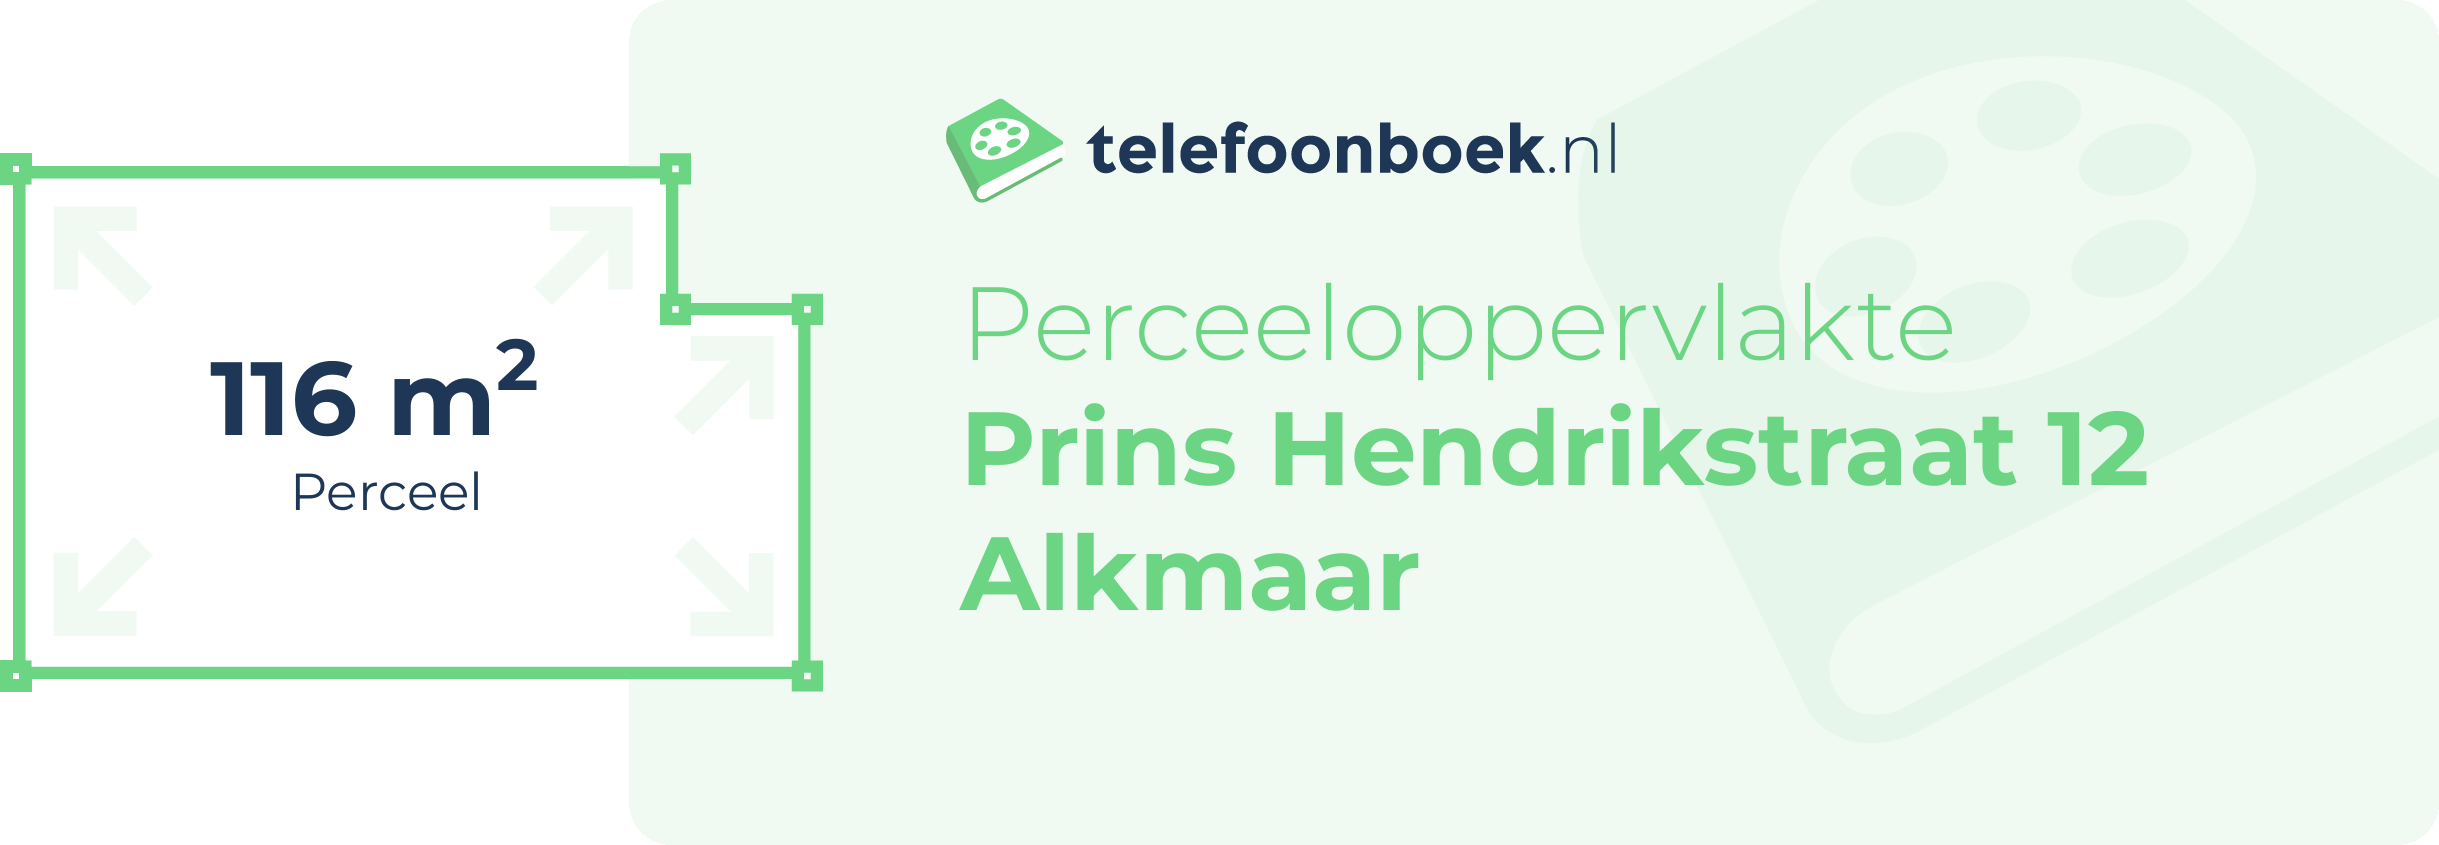 Perceeloppervlakte Prins Hendrikstraat 12 Alkmaar